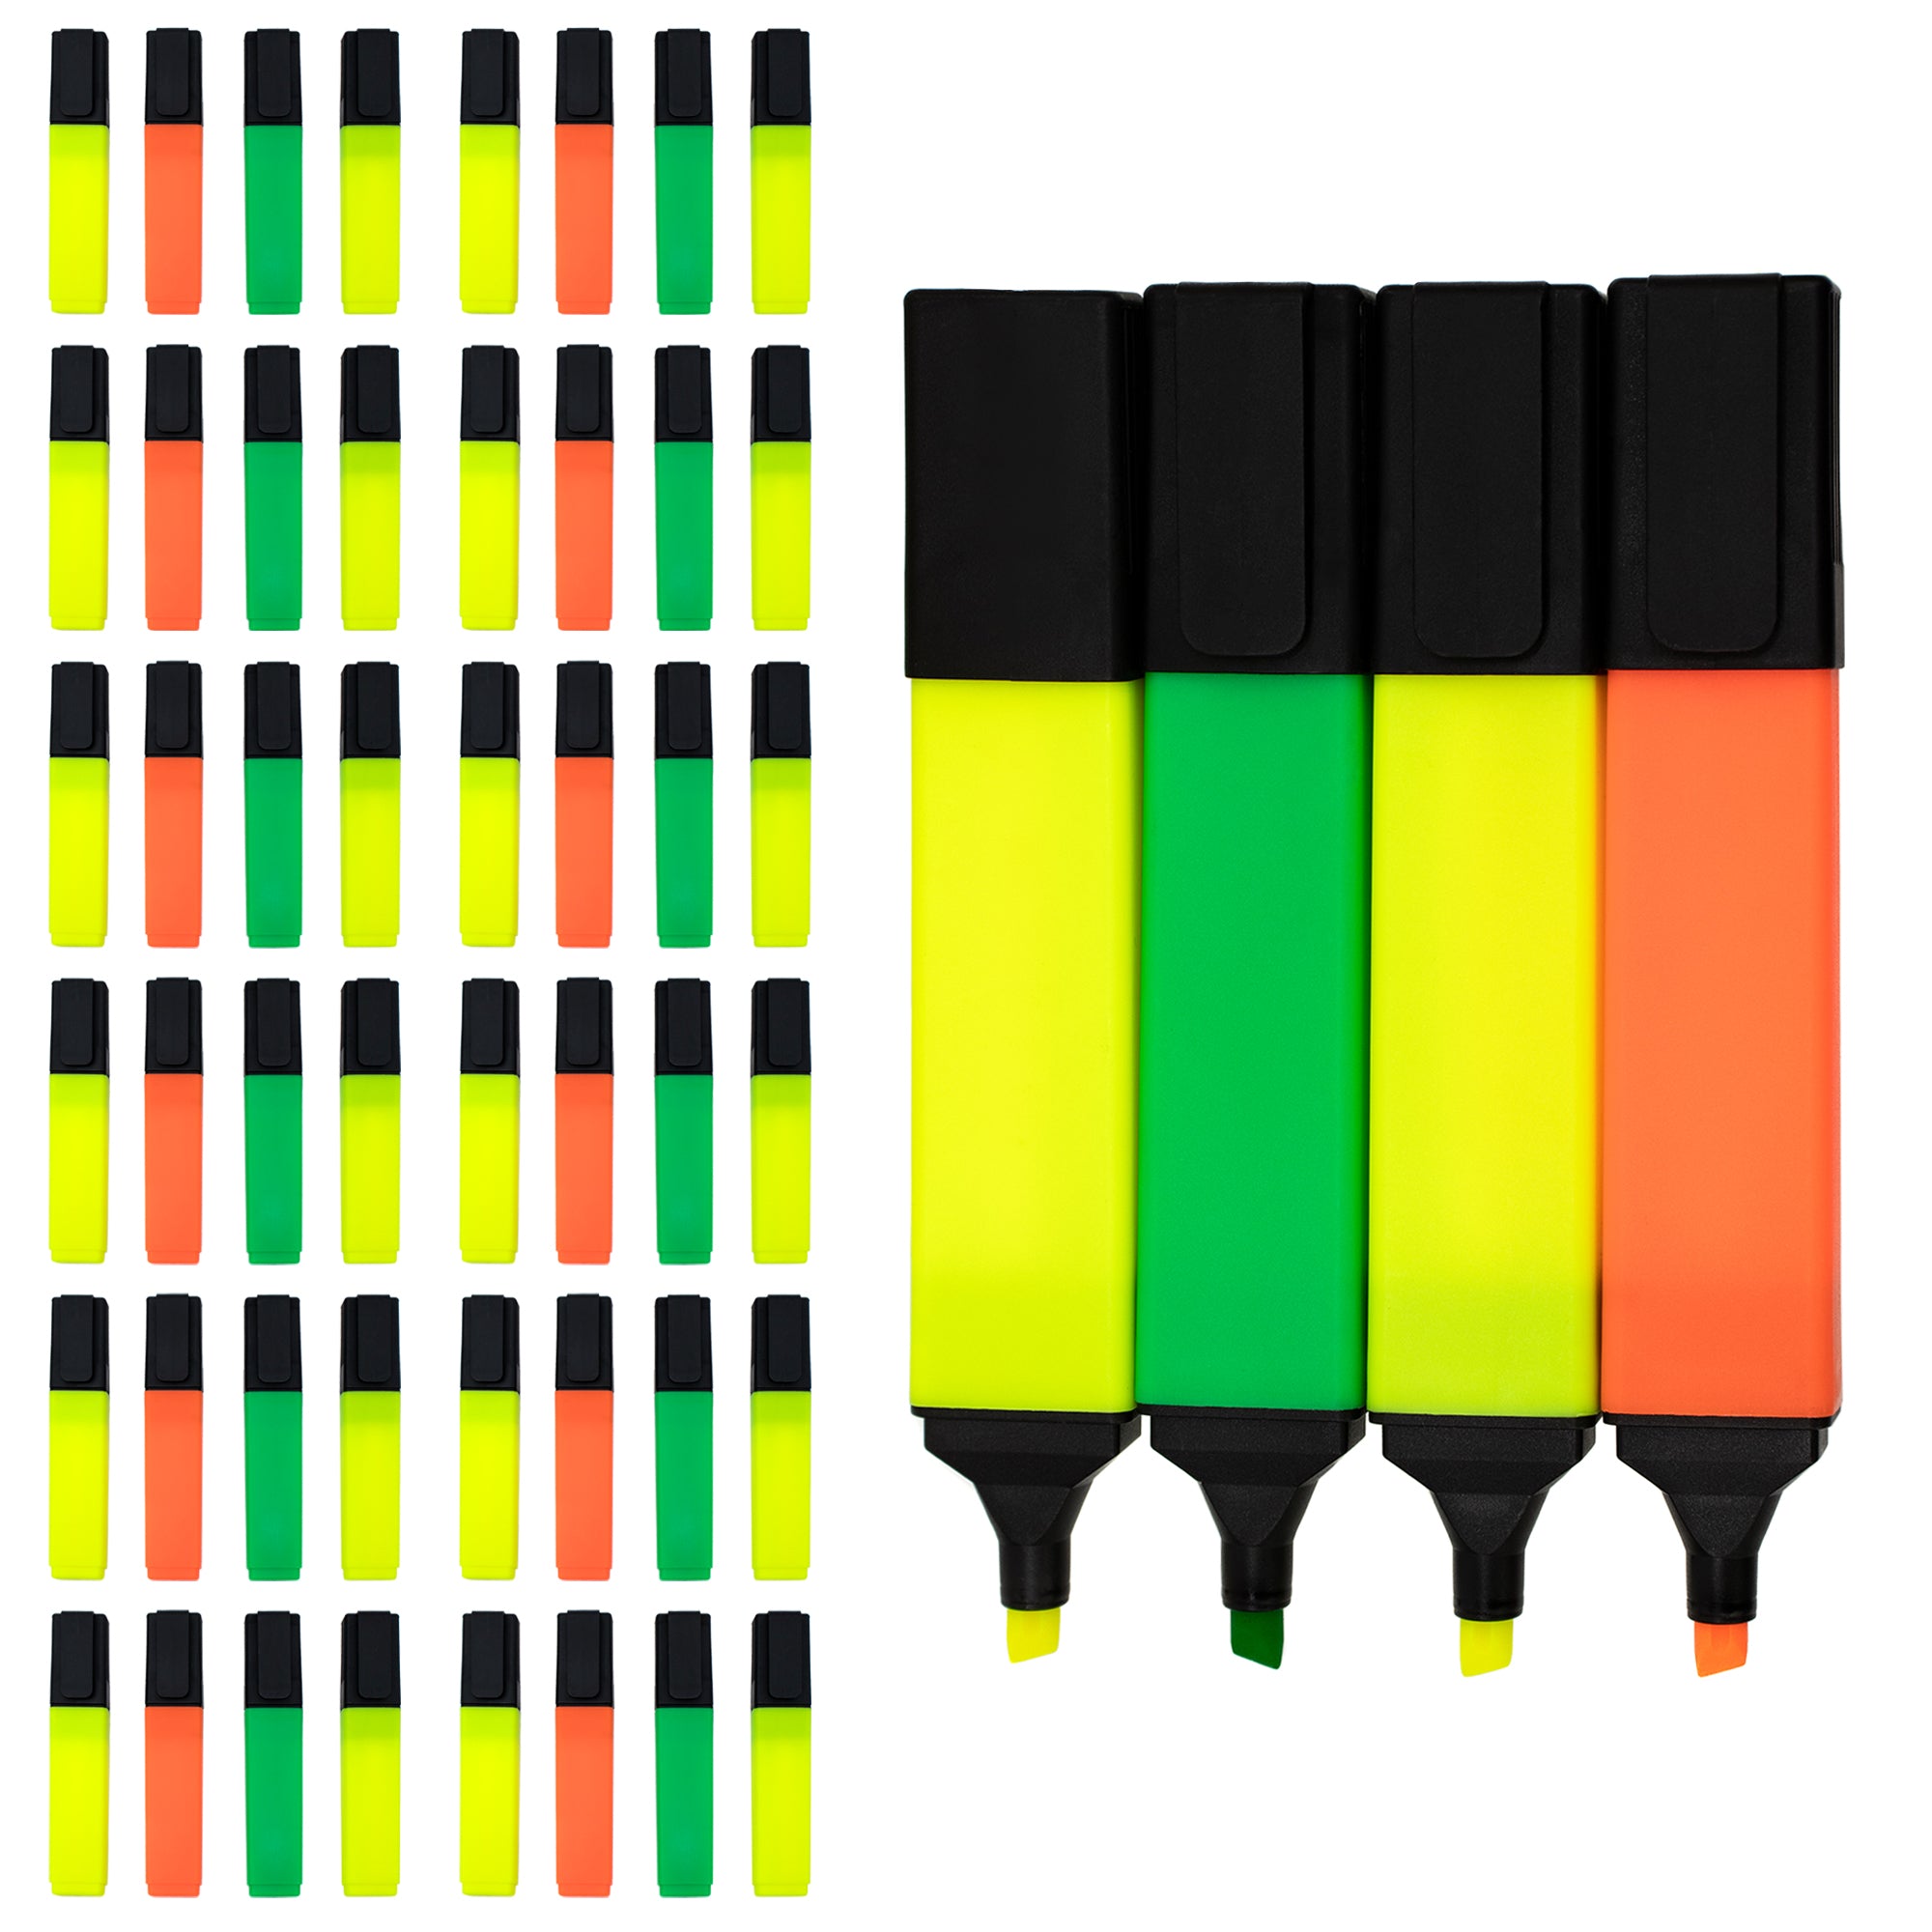 96 Bulk PVC Zipper pencil pouch, assorted neon colors - at 